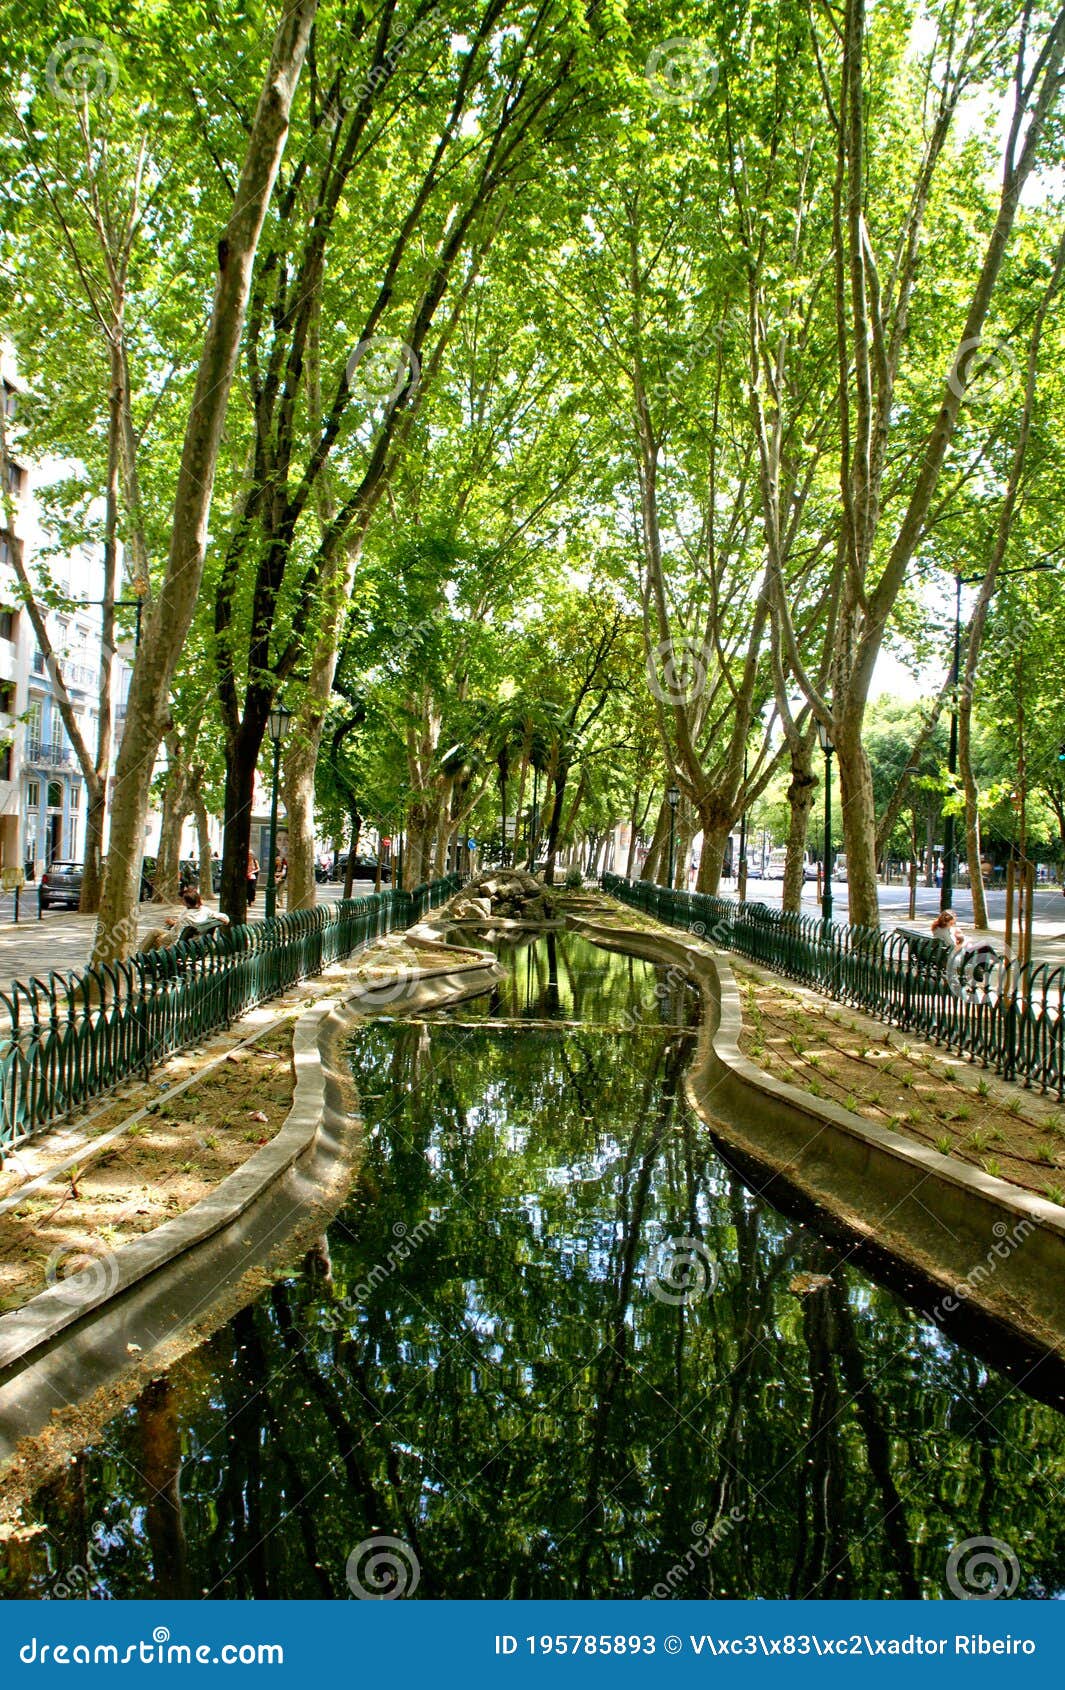 avenida da liberdade garden in lisbon